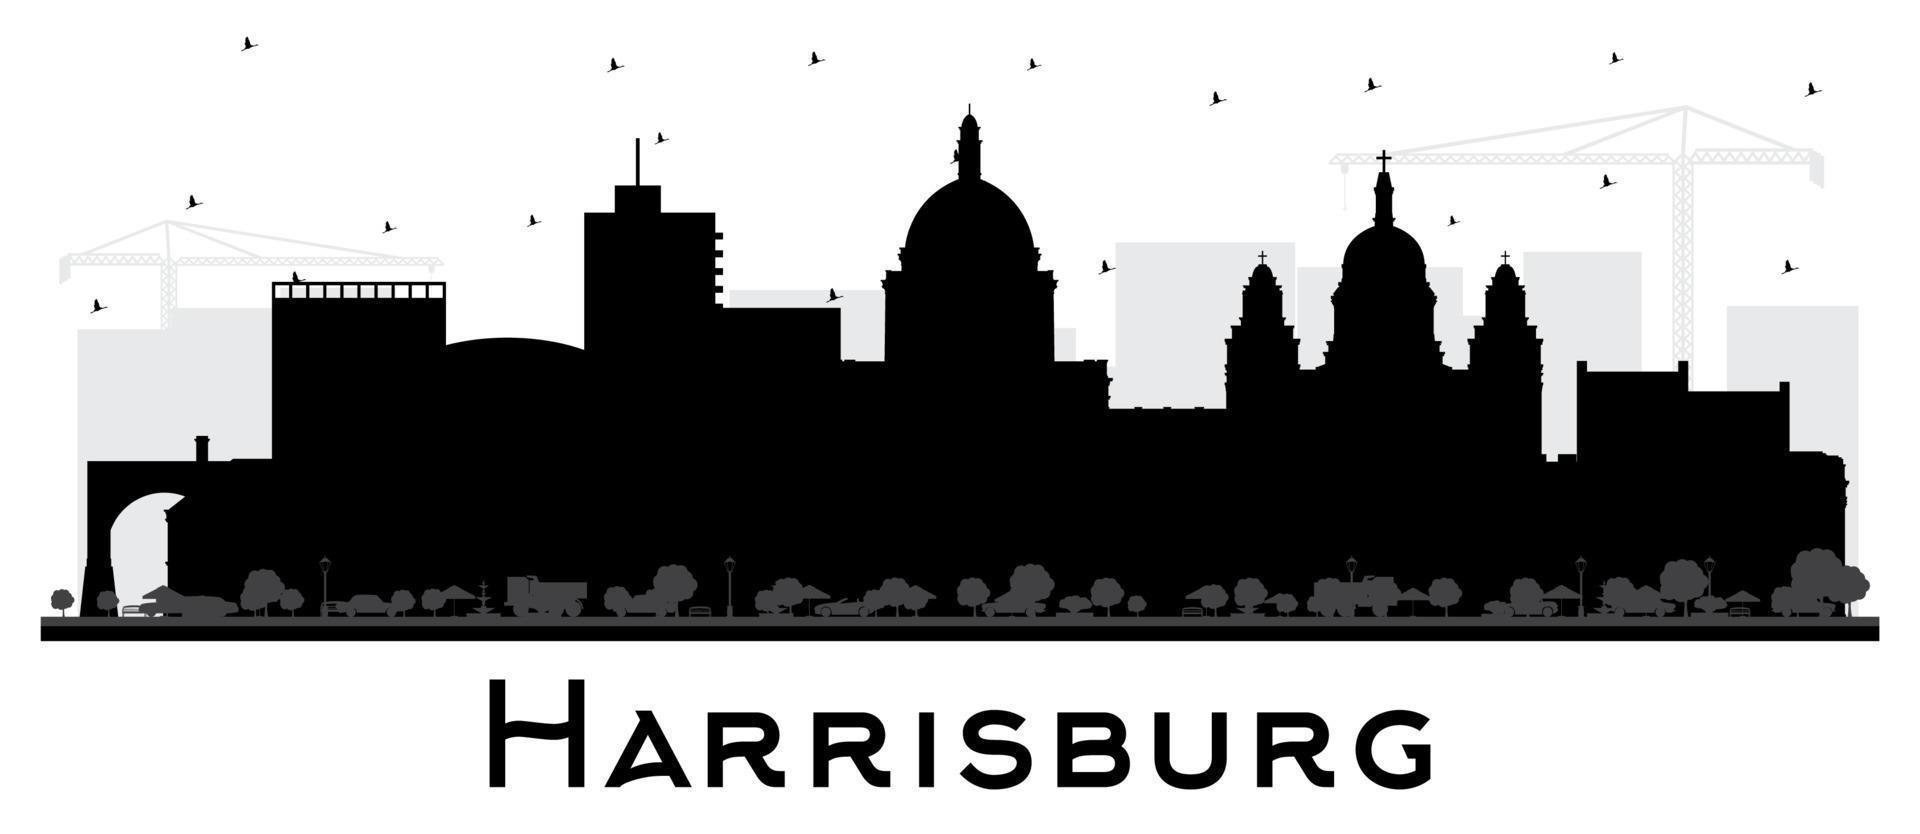 harrisburg pennsylvania city skyline silhouette mit schwarzen gebäuden isoliert auf weiß. vektor